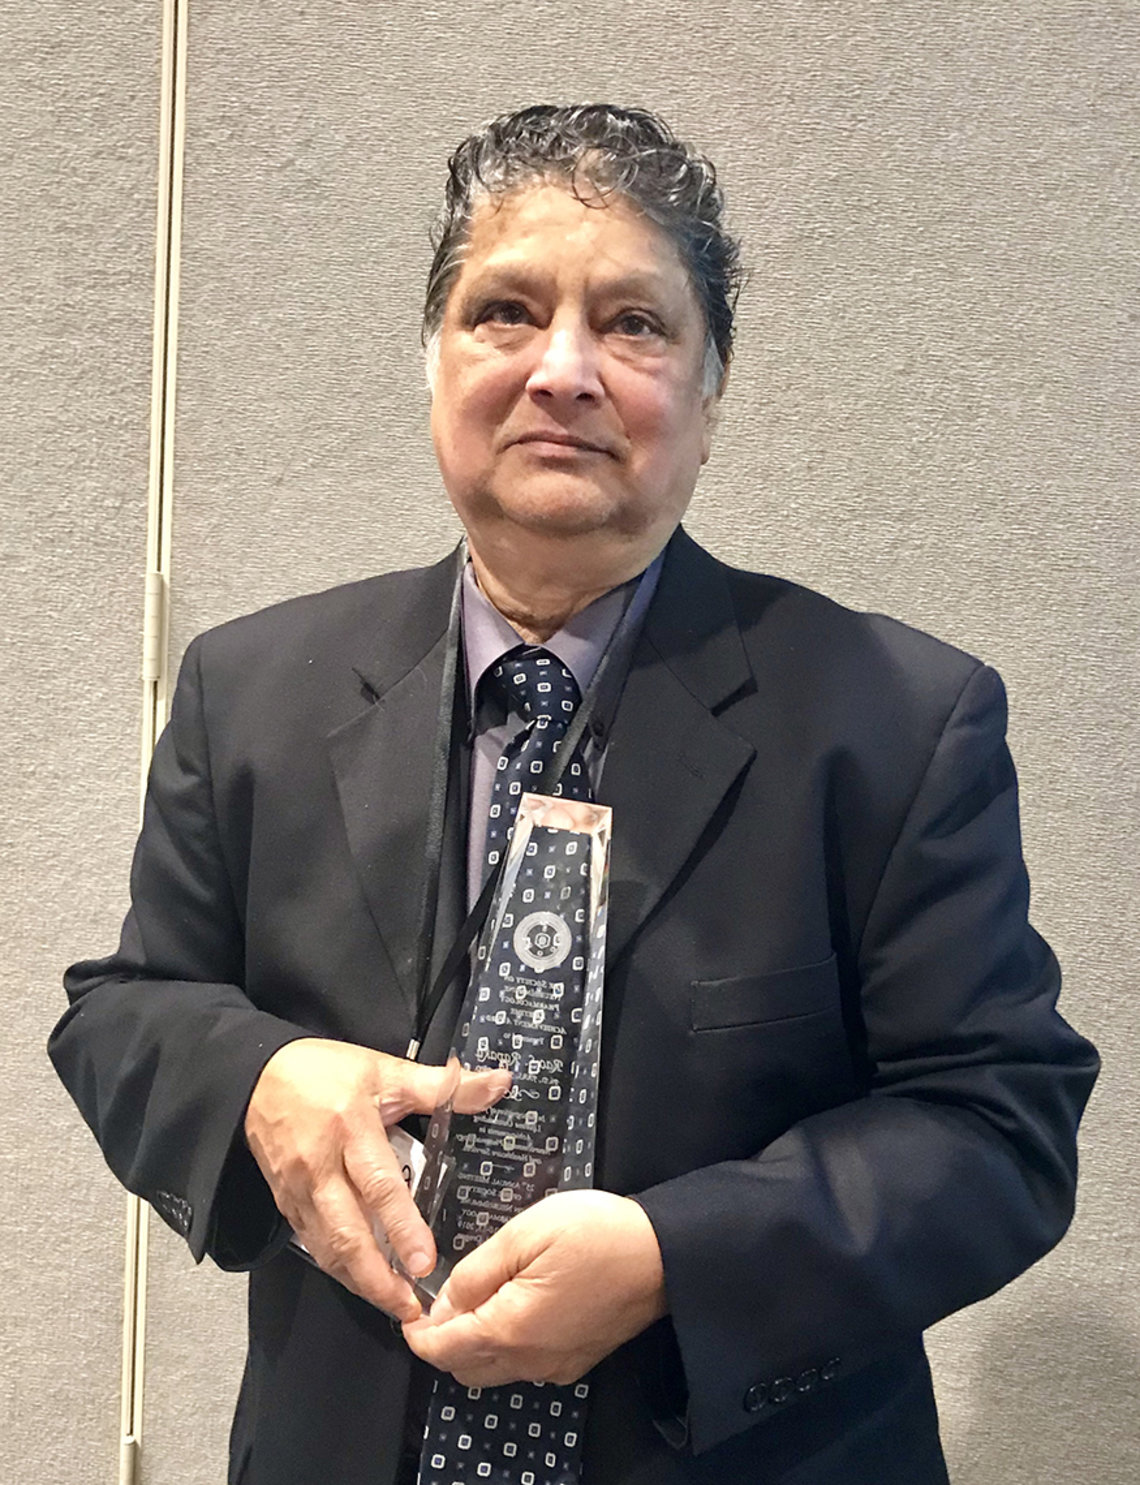 Dr. Rapaka holds up his award